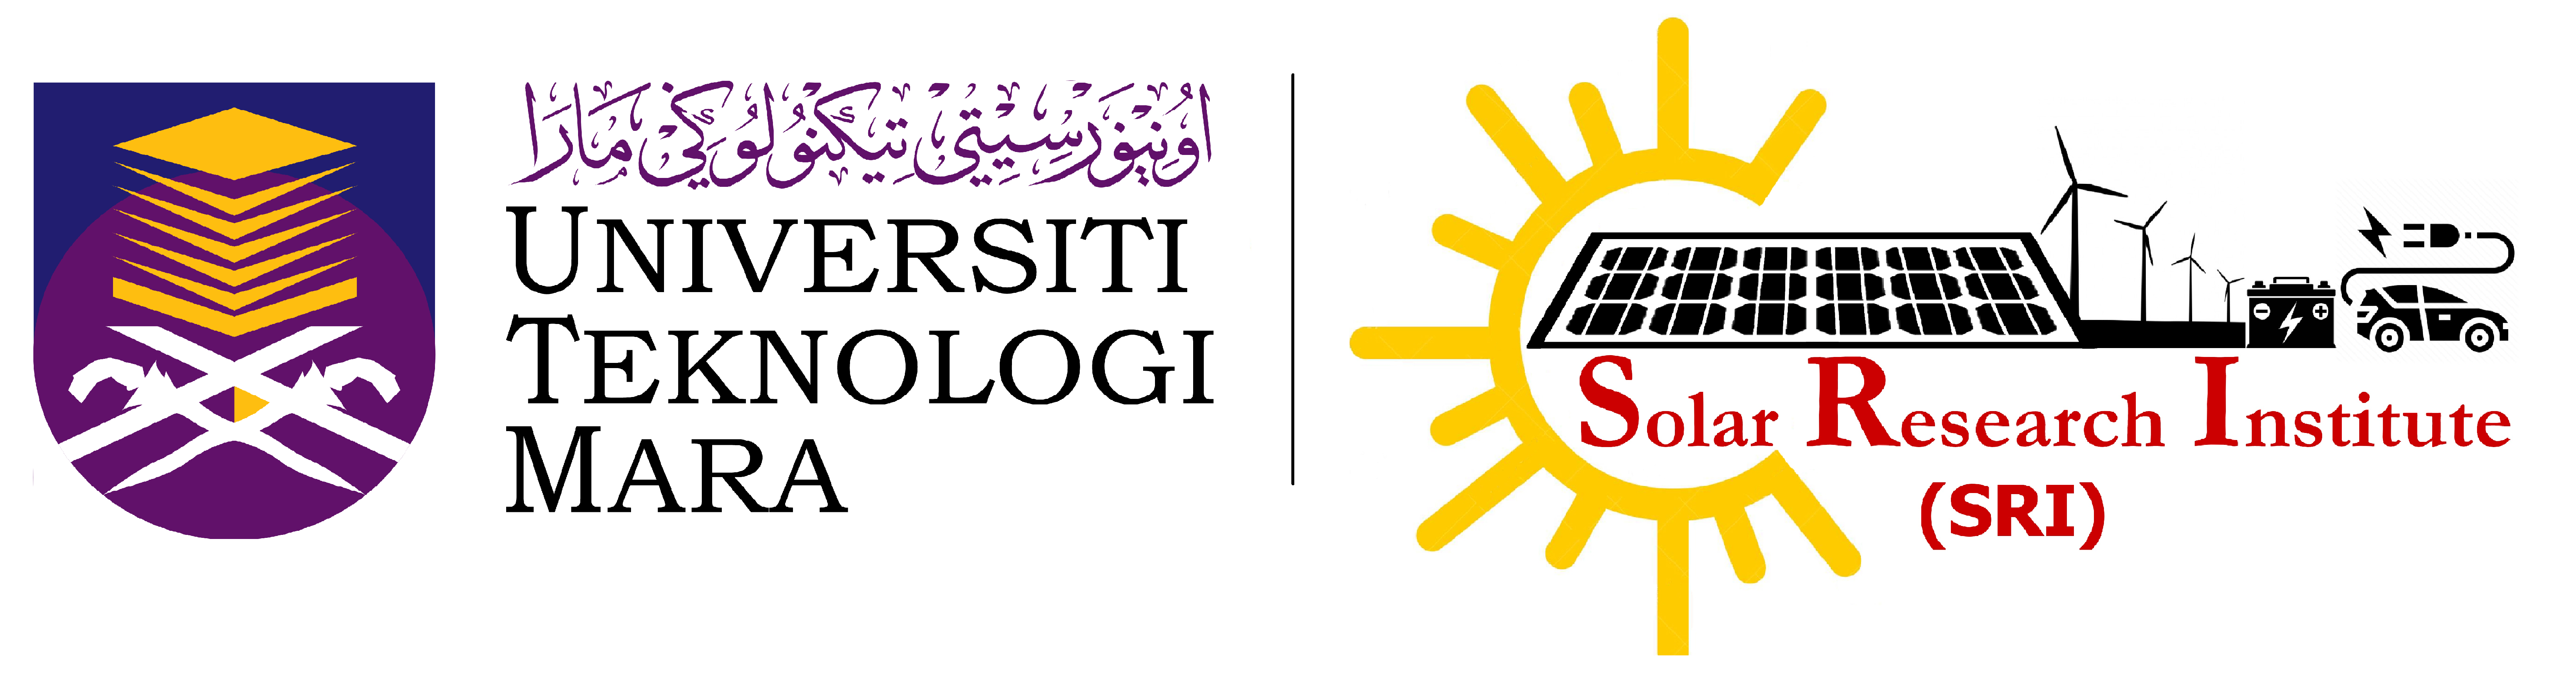 UiTM Solar Research Institute (SRI)